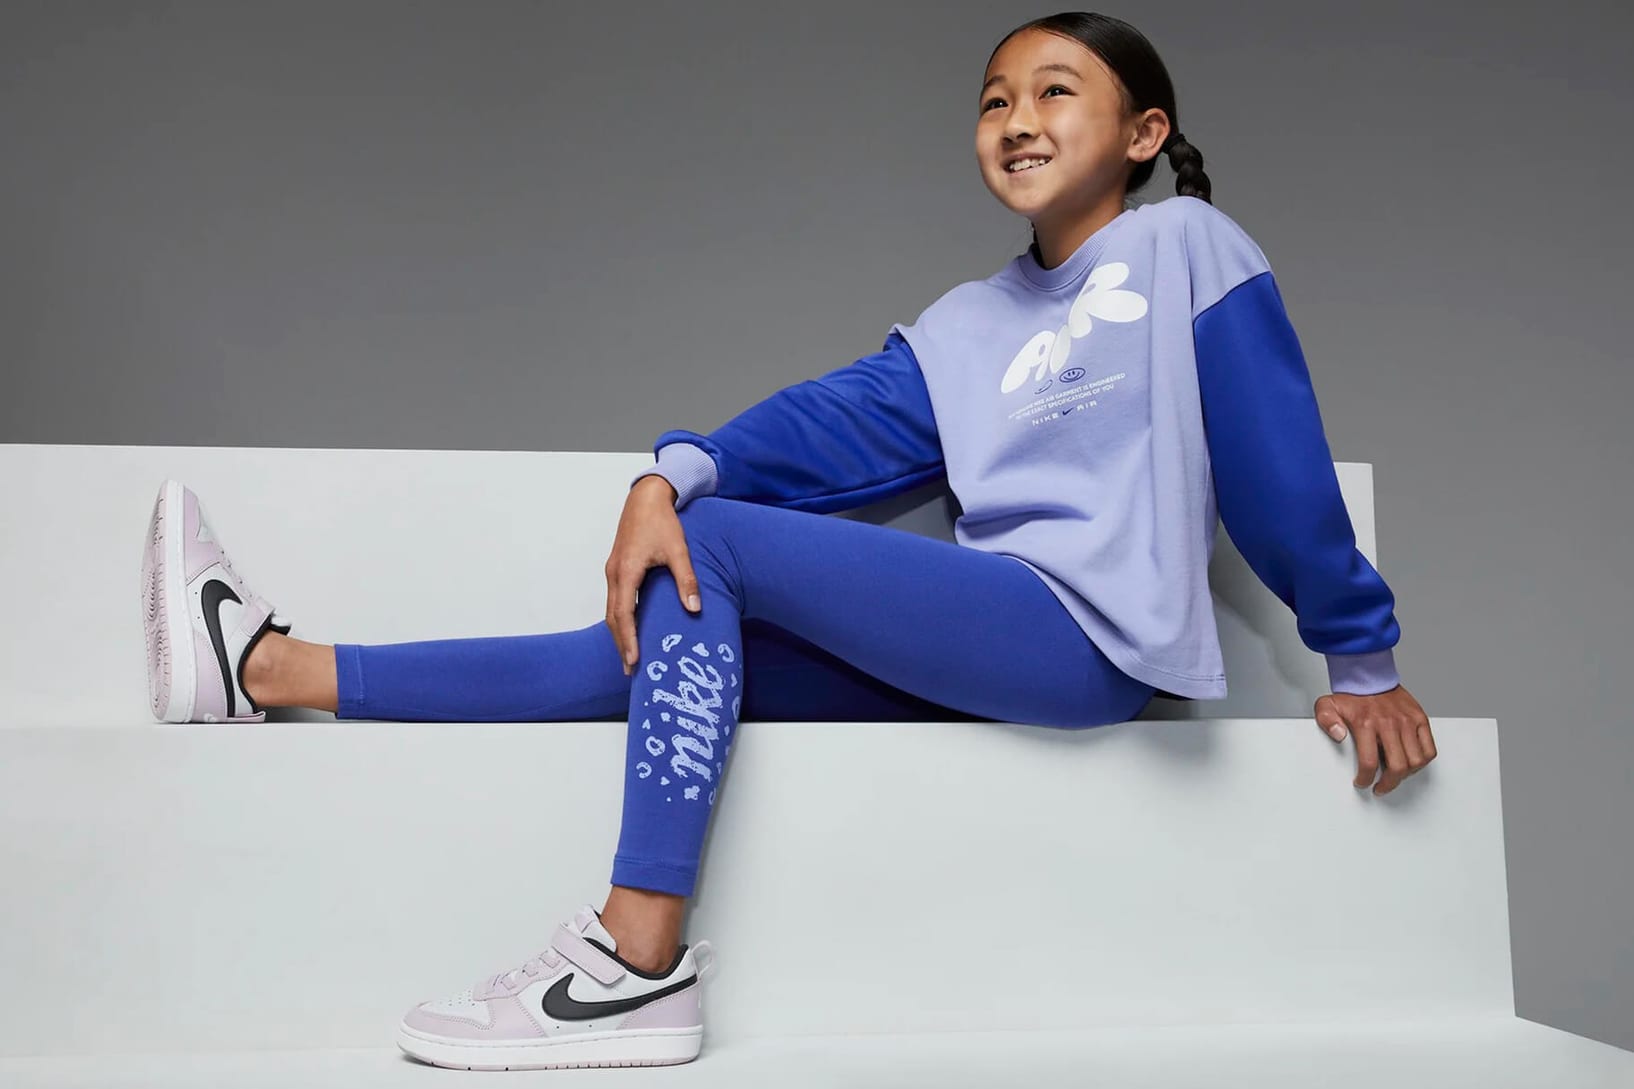 Inclinarse en caso tenga en cuenta Las mejores prendas atléticas para niña de Nike. Nike